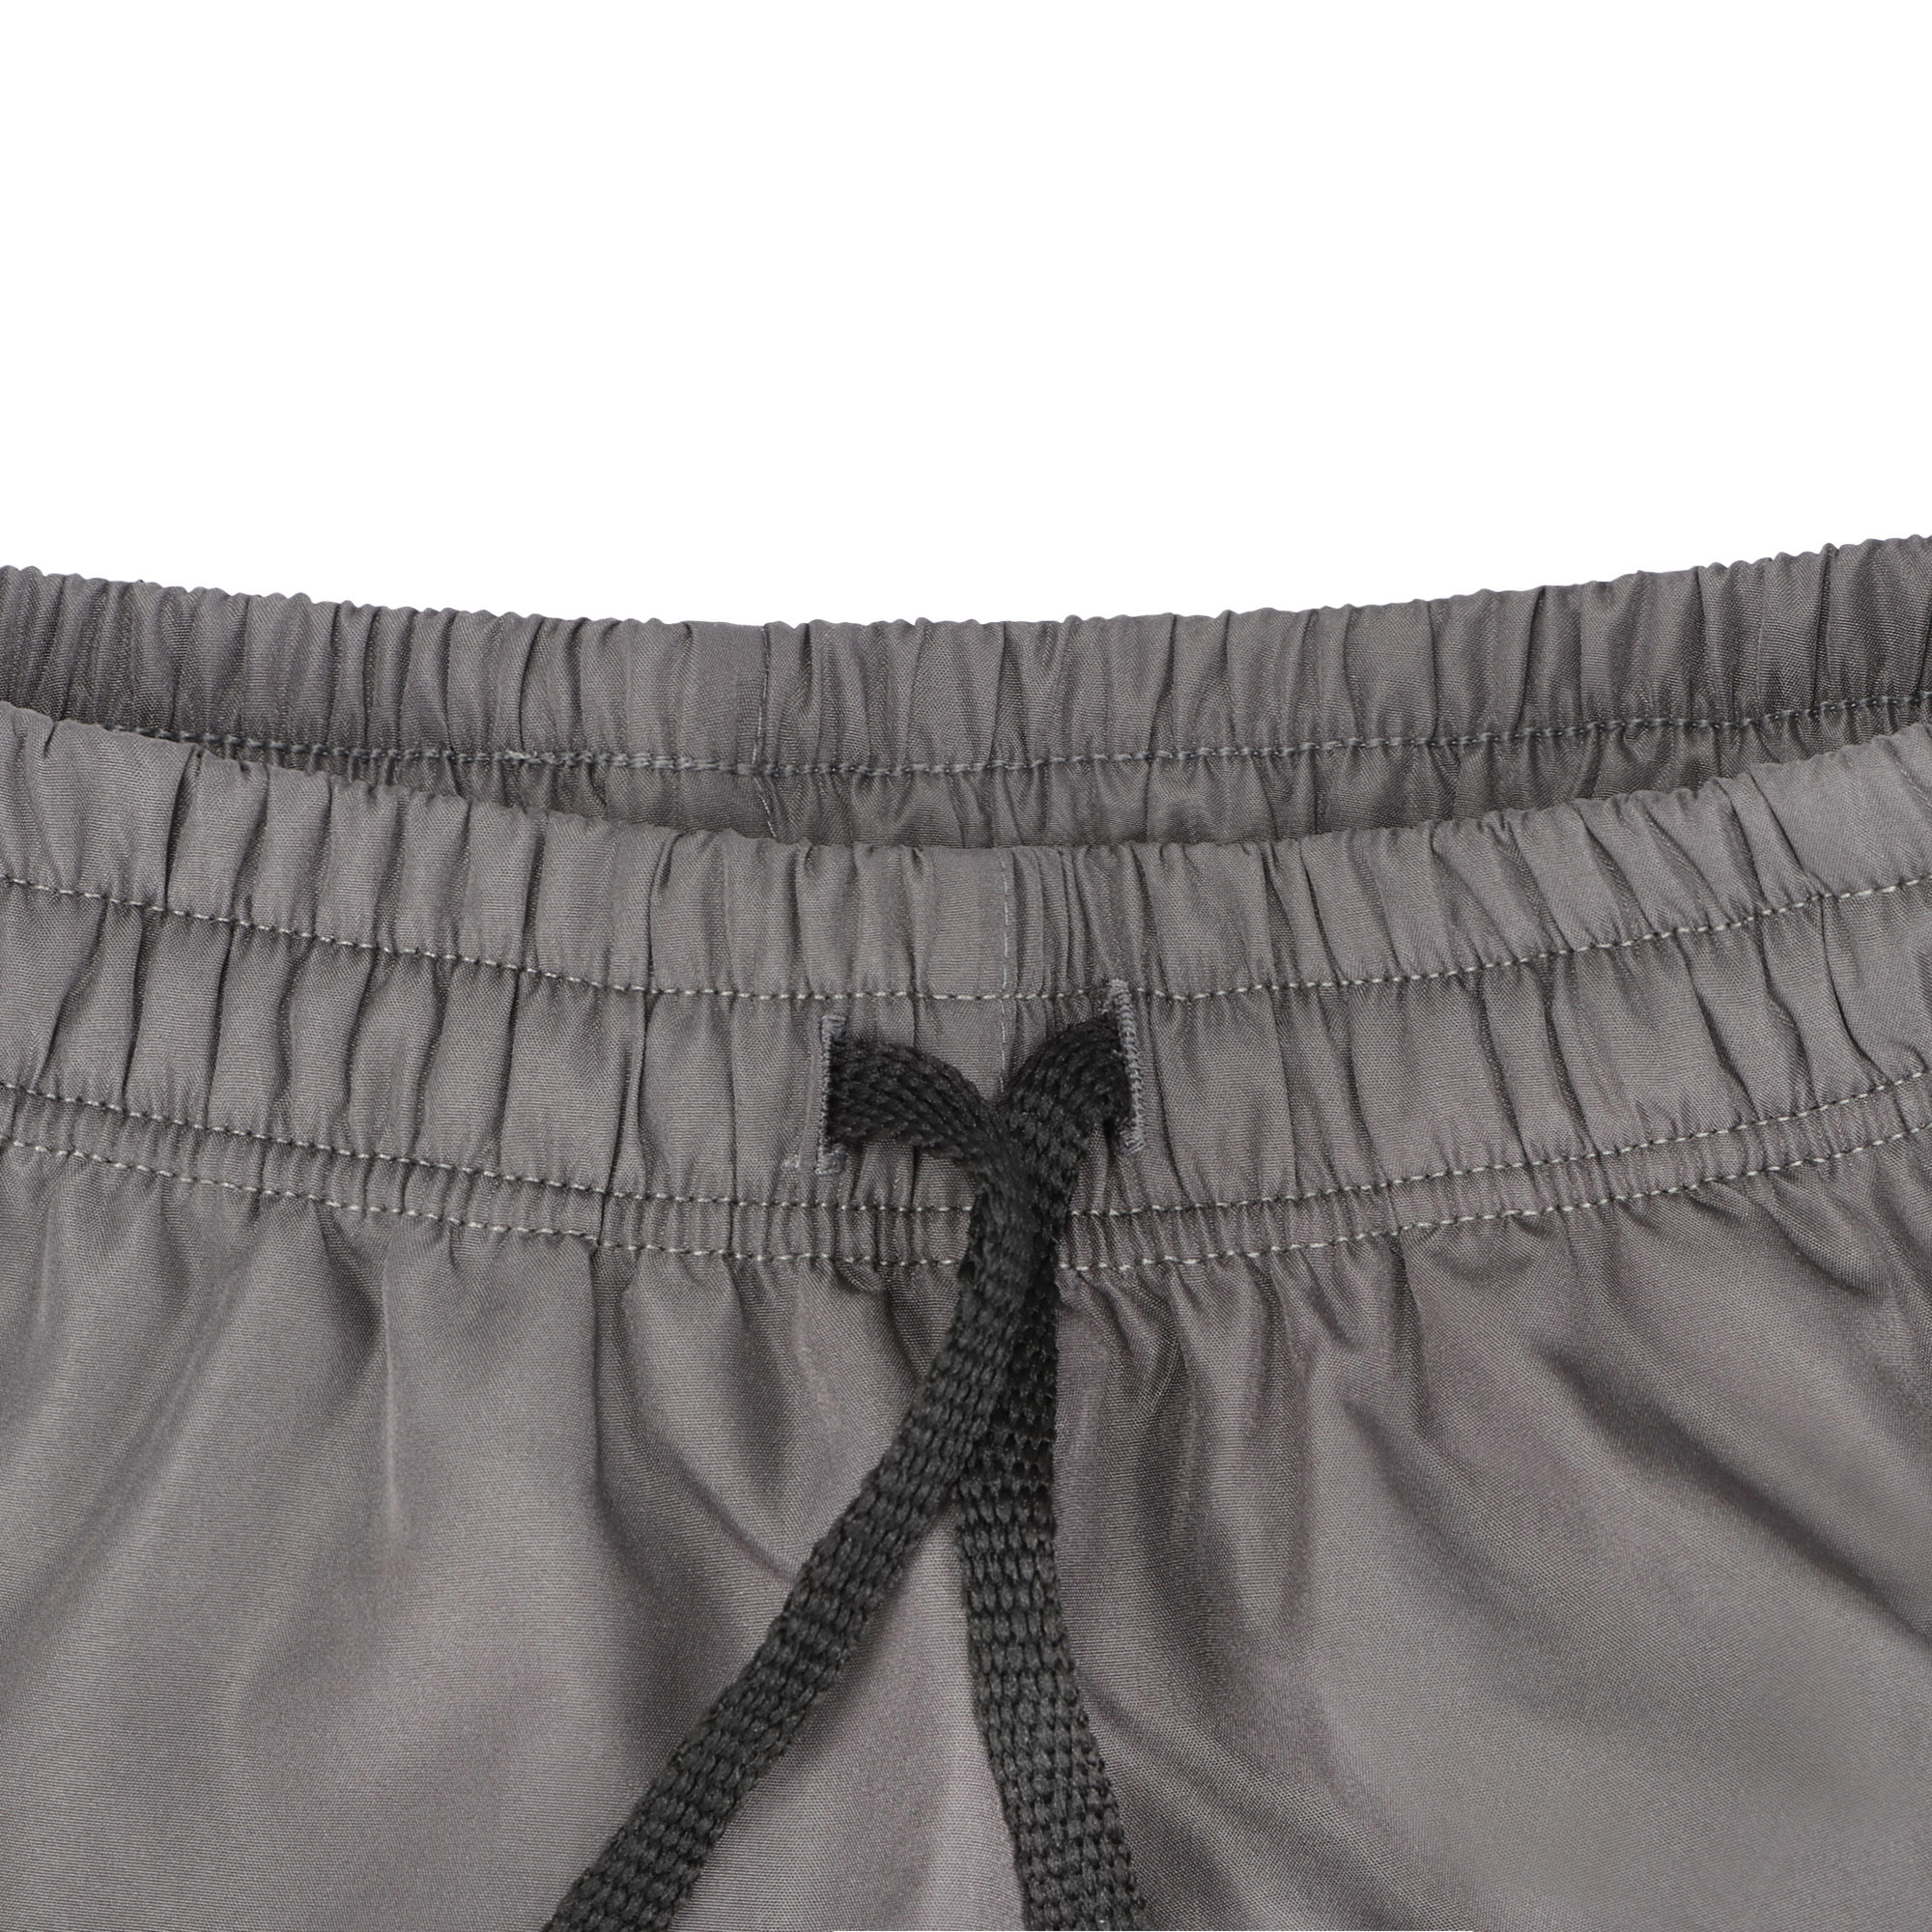 Мужские шорты пляжные Pantelemone PH-114 темно-серые 54, цвет темно-серый, размер 54 - фото 3